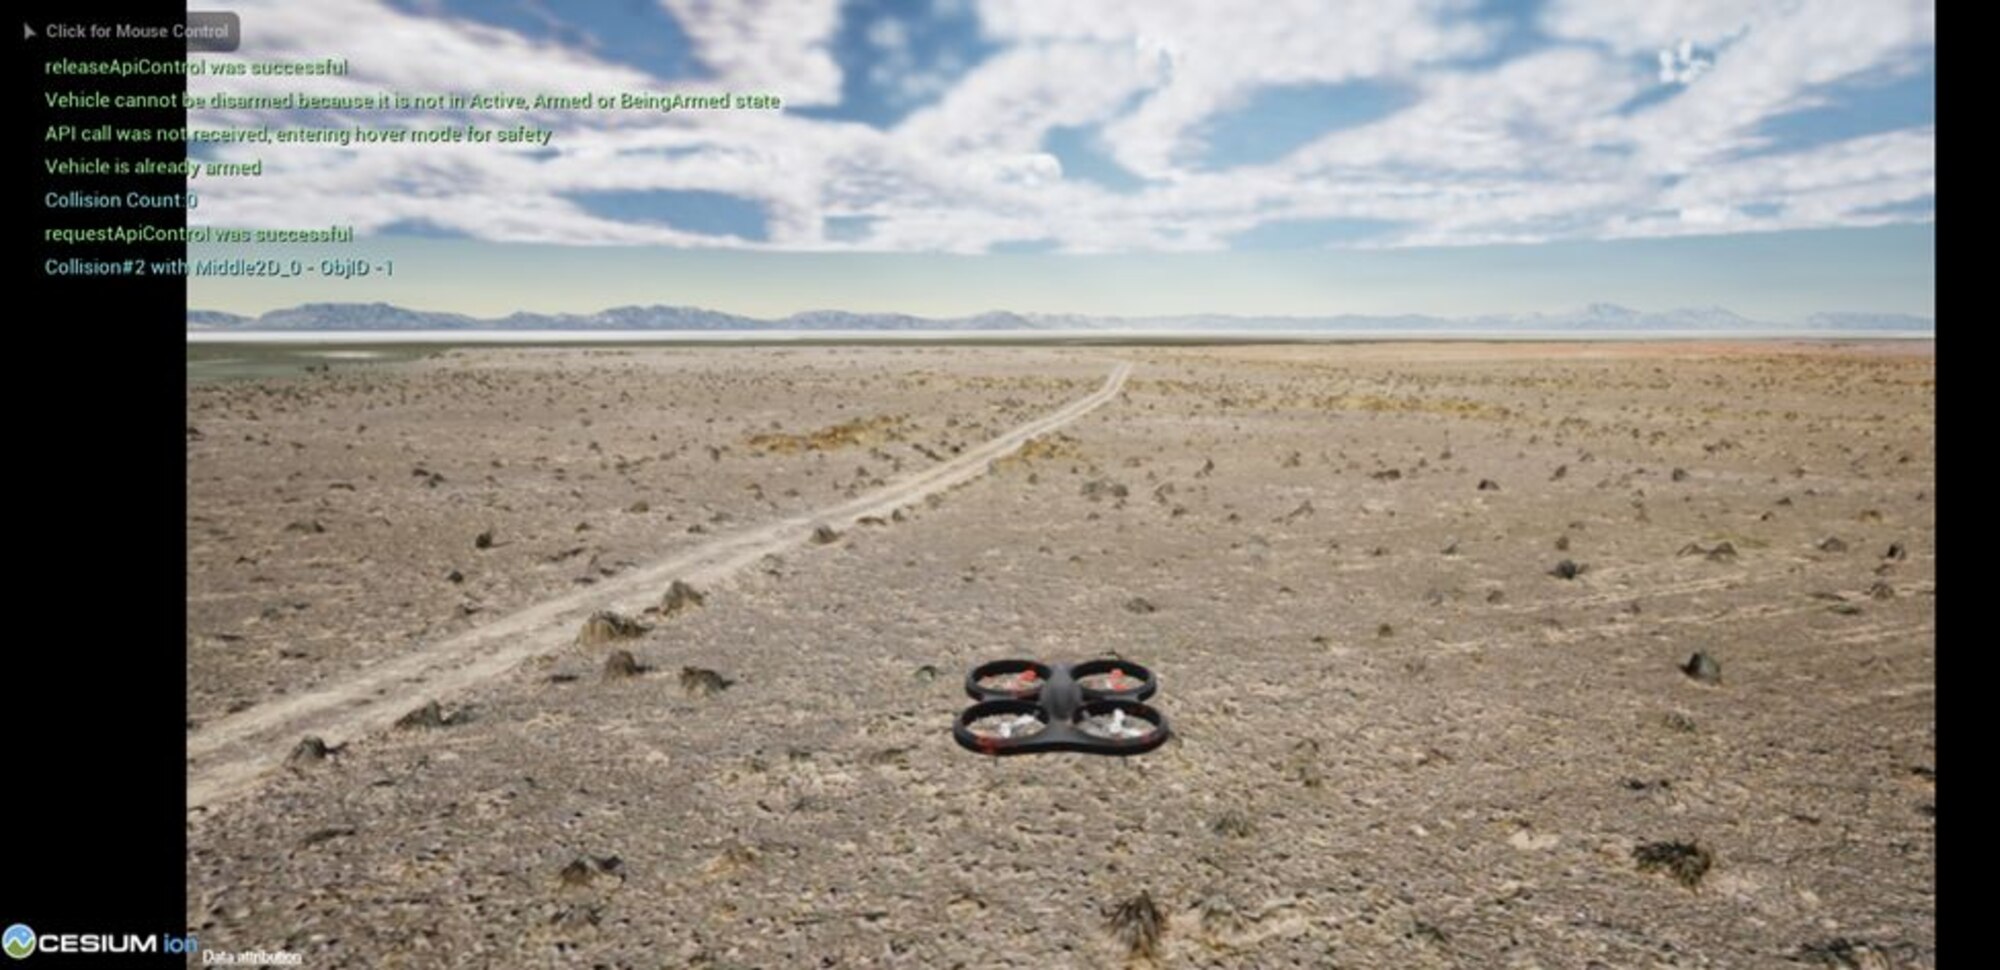 Digital recreation of drone flying over desert